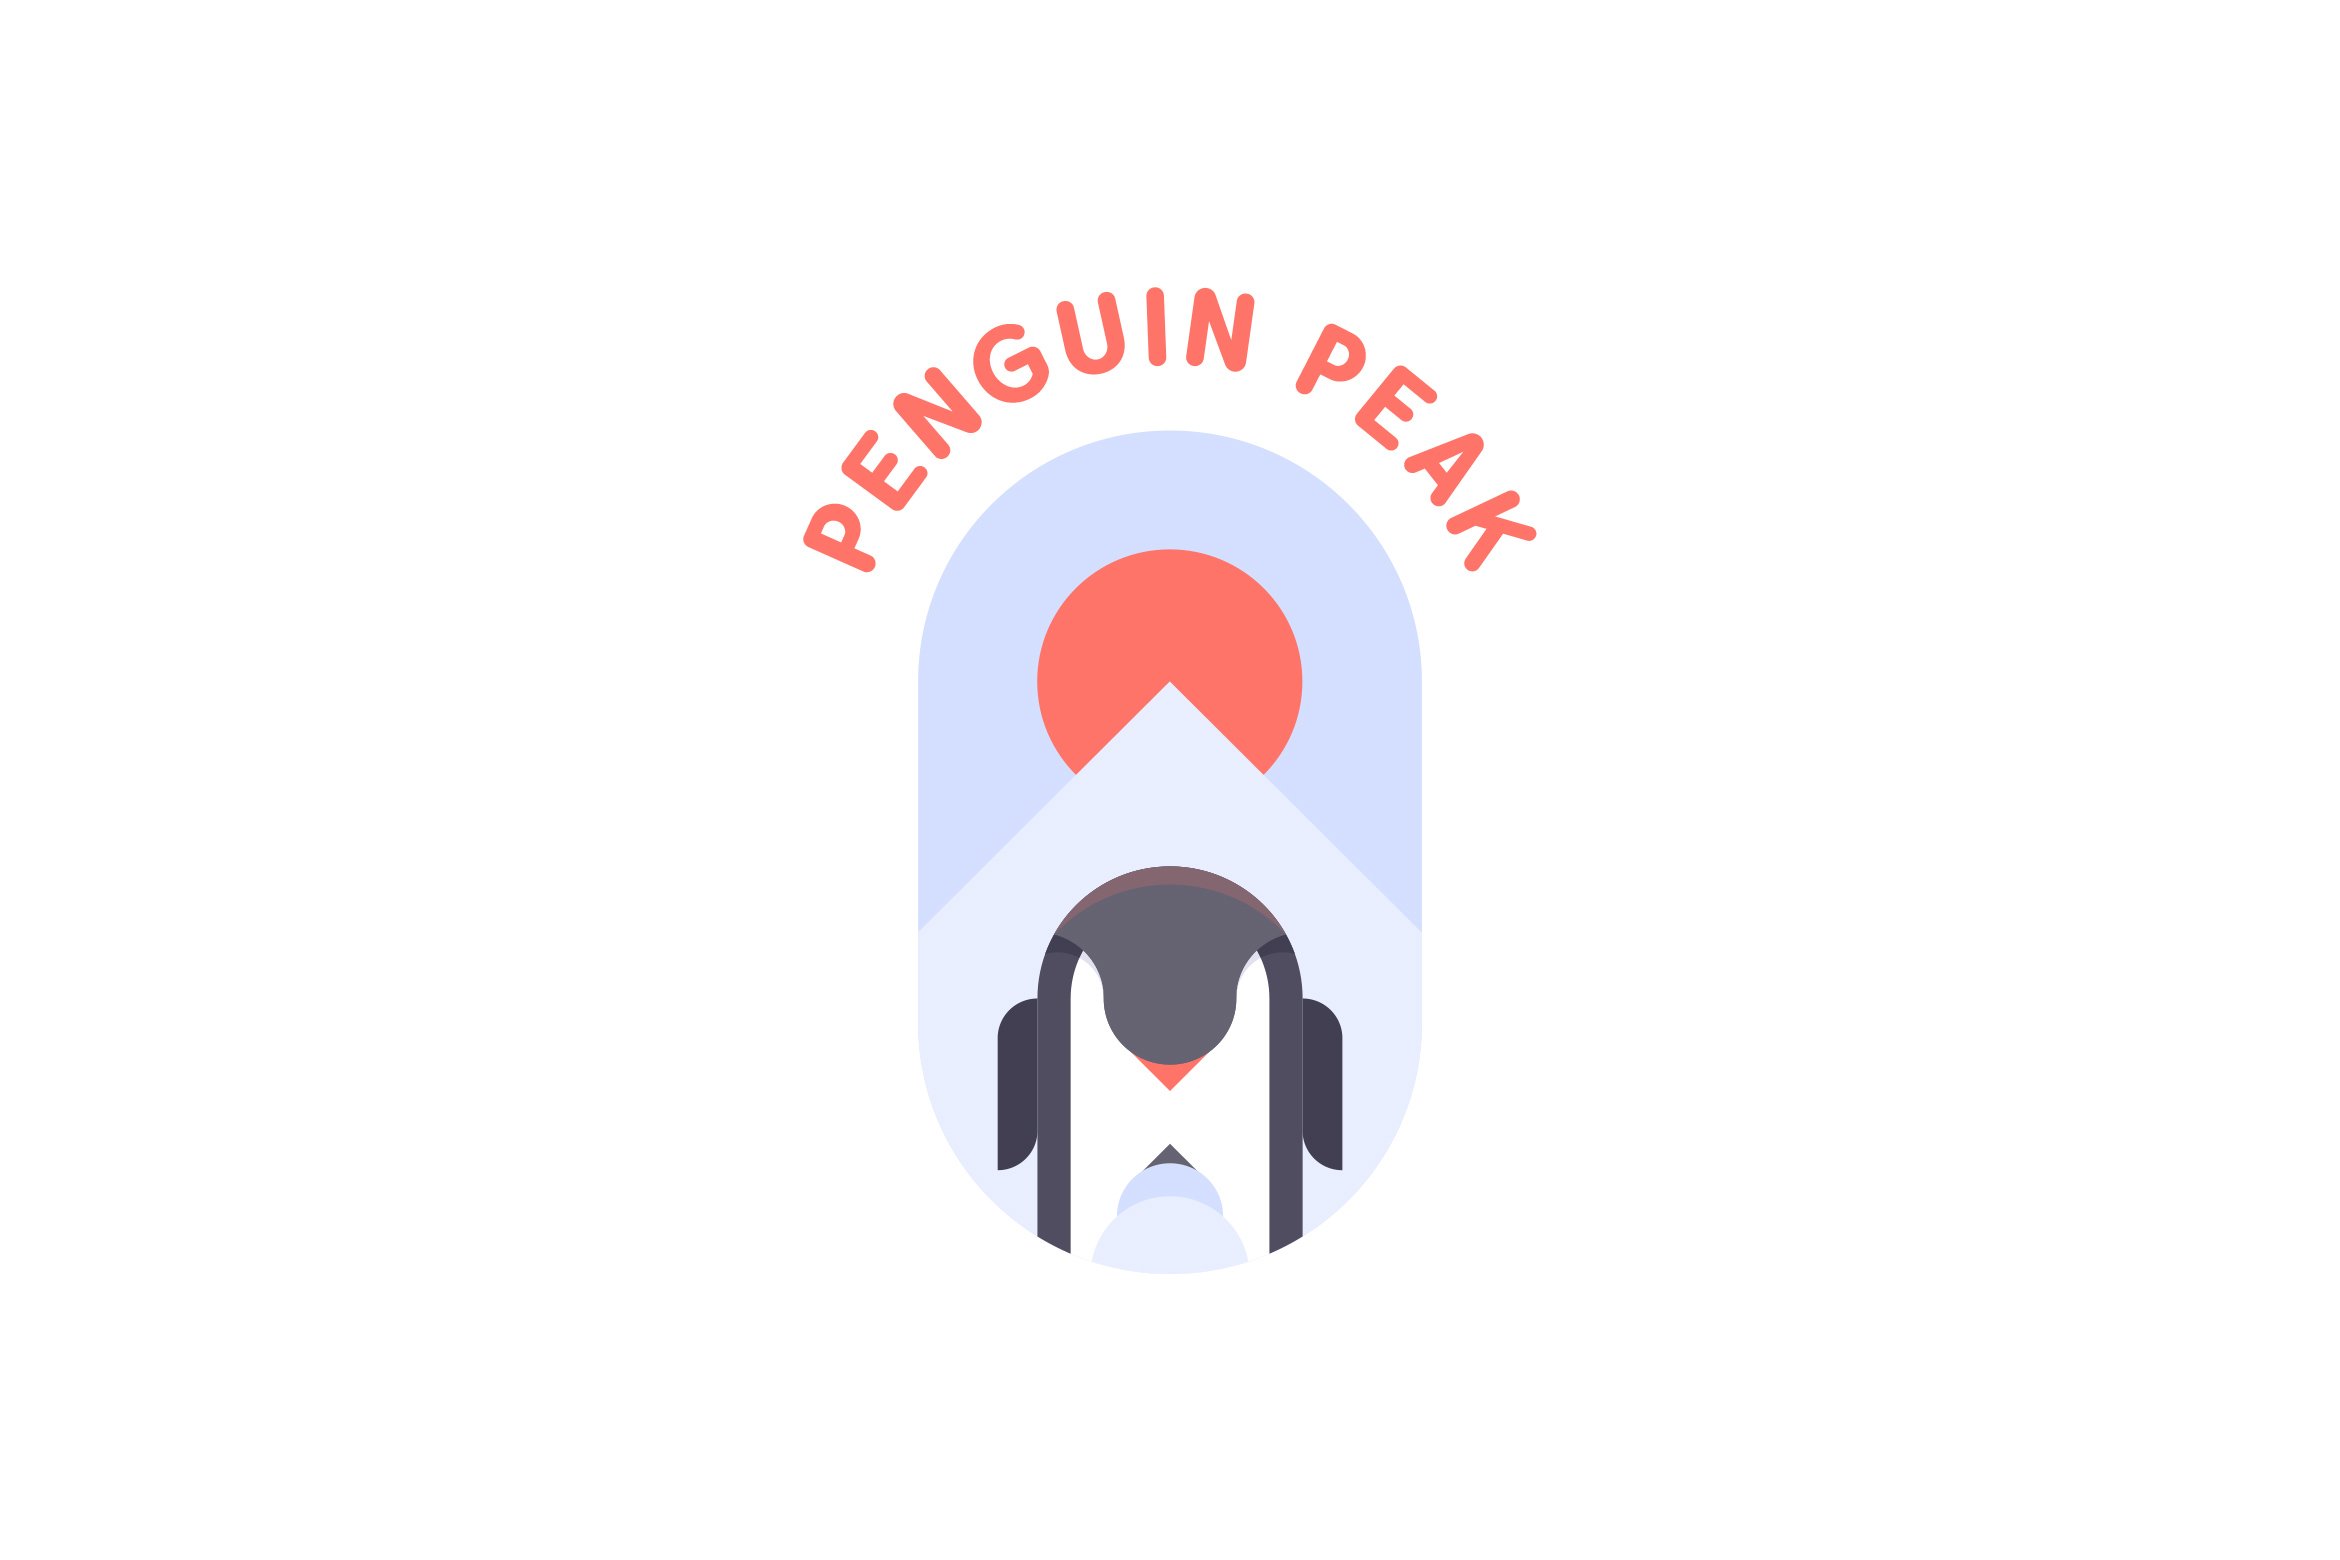 Penguin Peak Logo cover image.